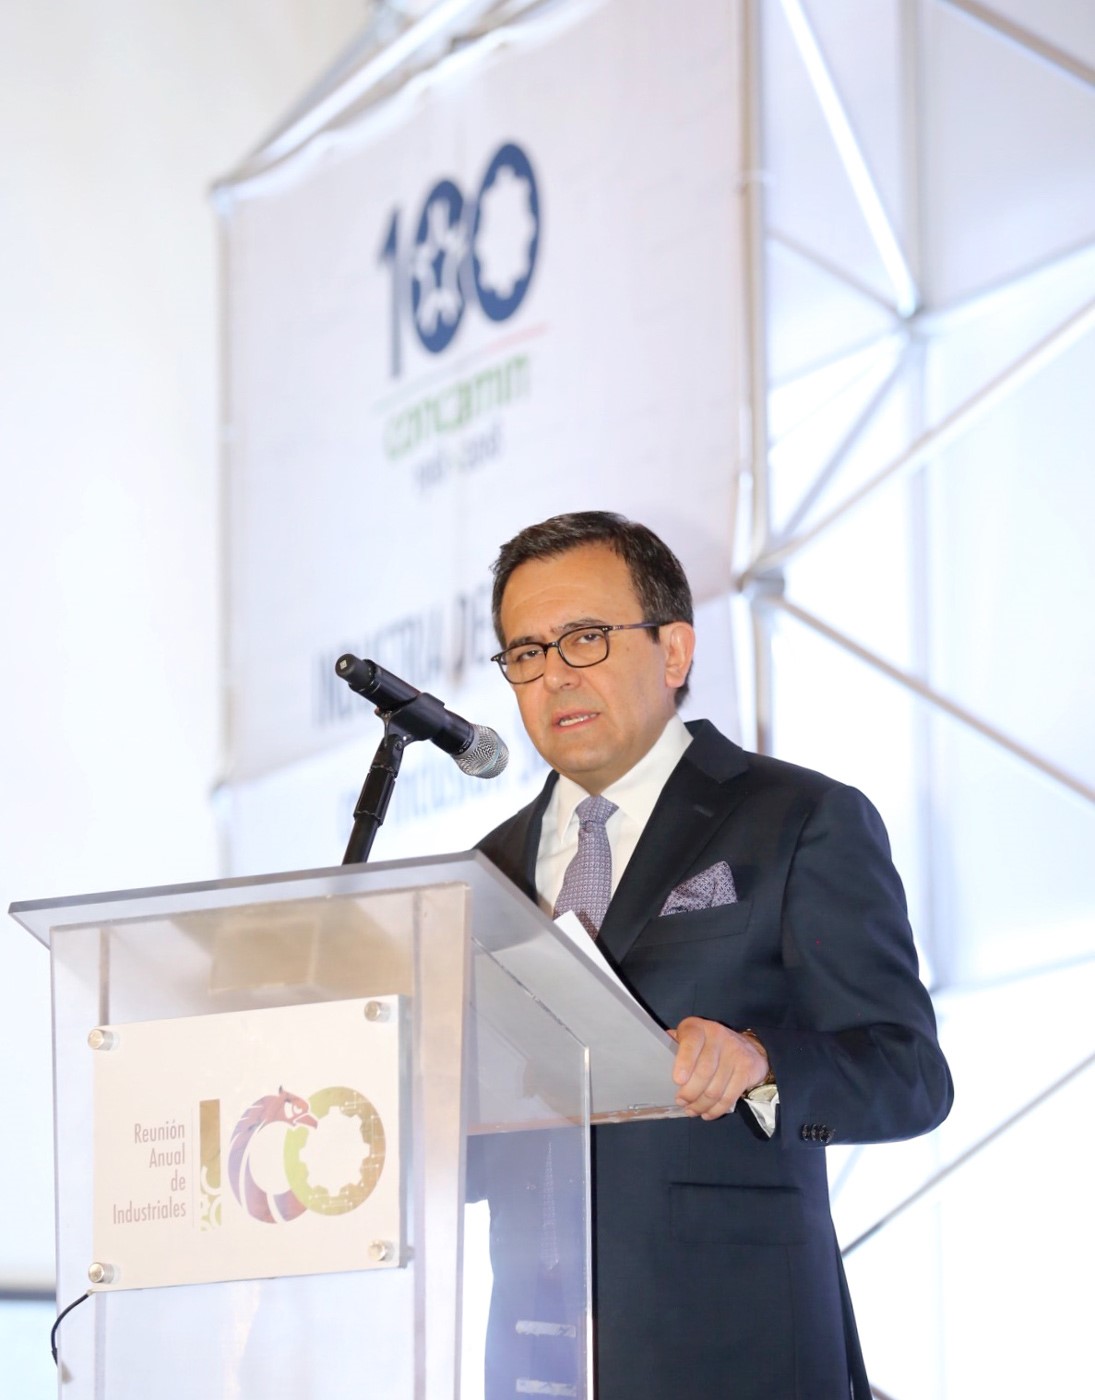 Imagen que muestra la participación del Secretario de Economía en la Reunión Anual de Industriales 2018 y 100 años de la CONCAMIN